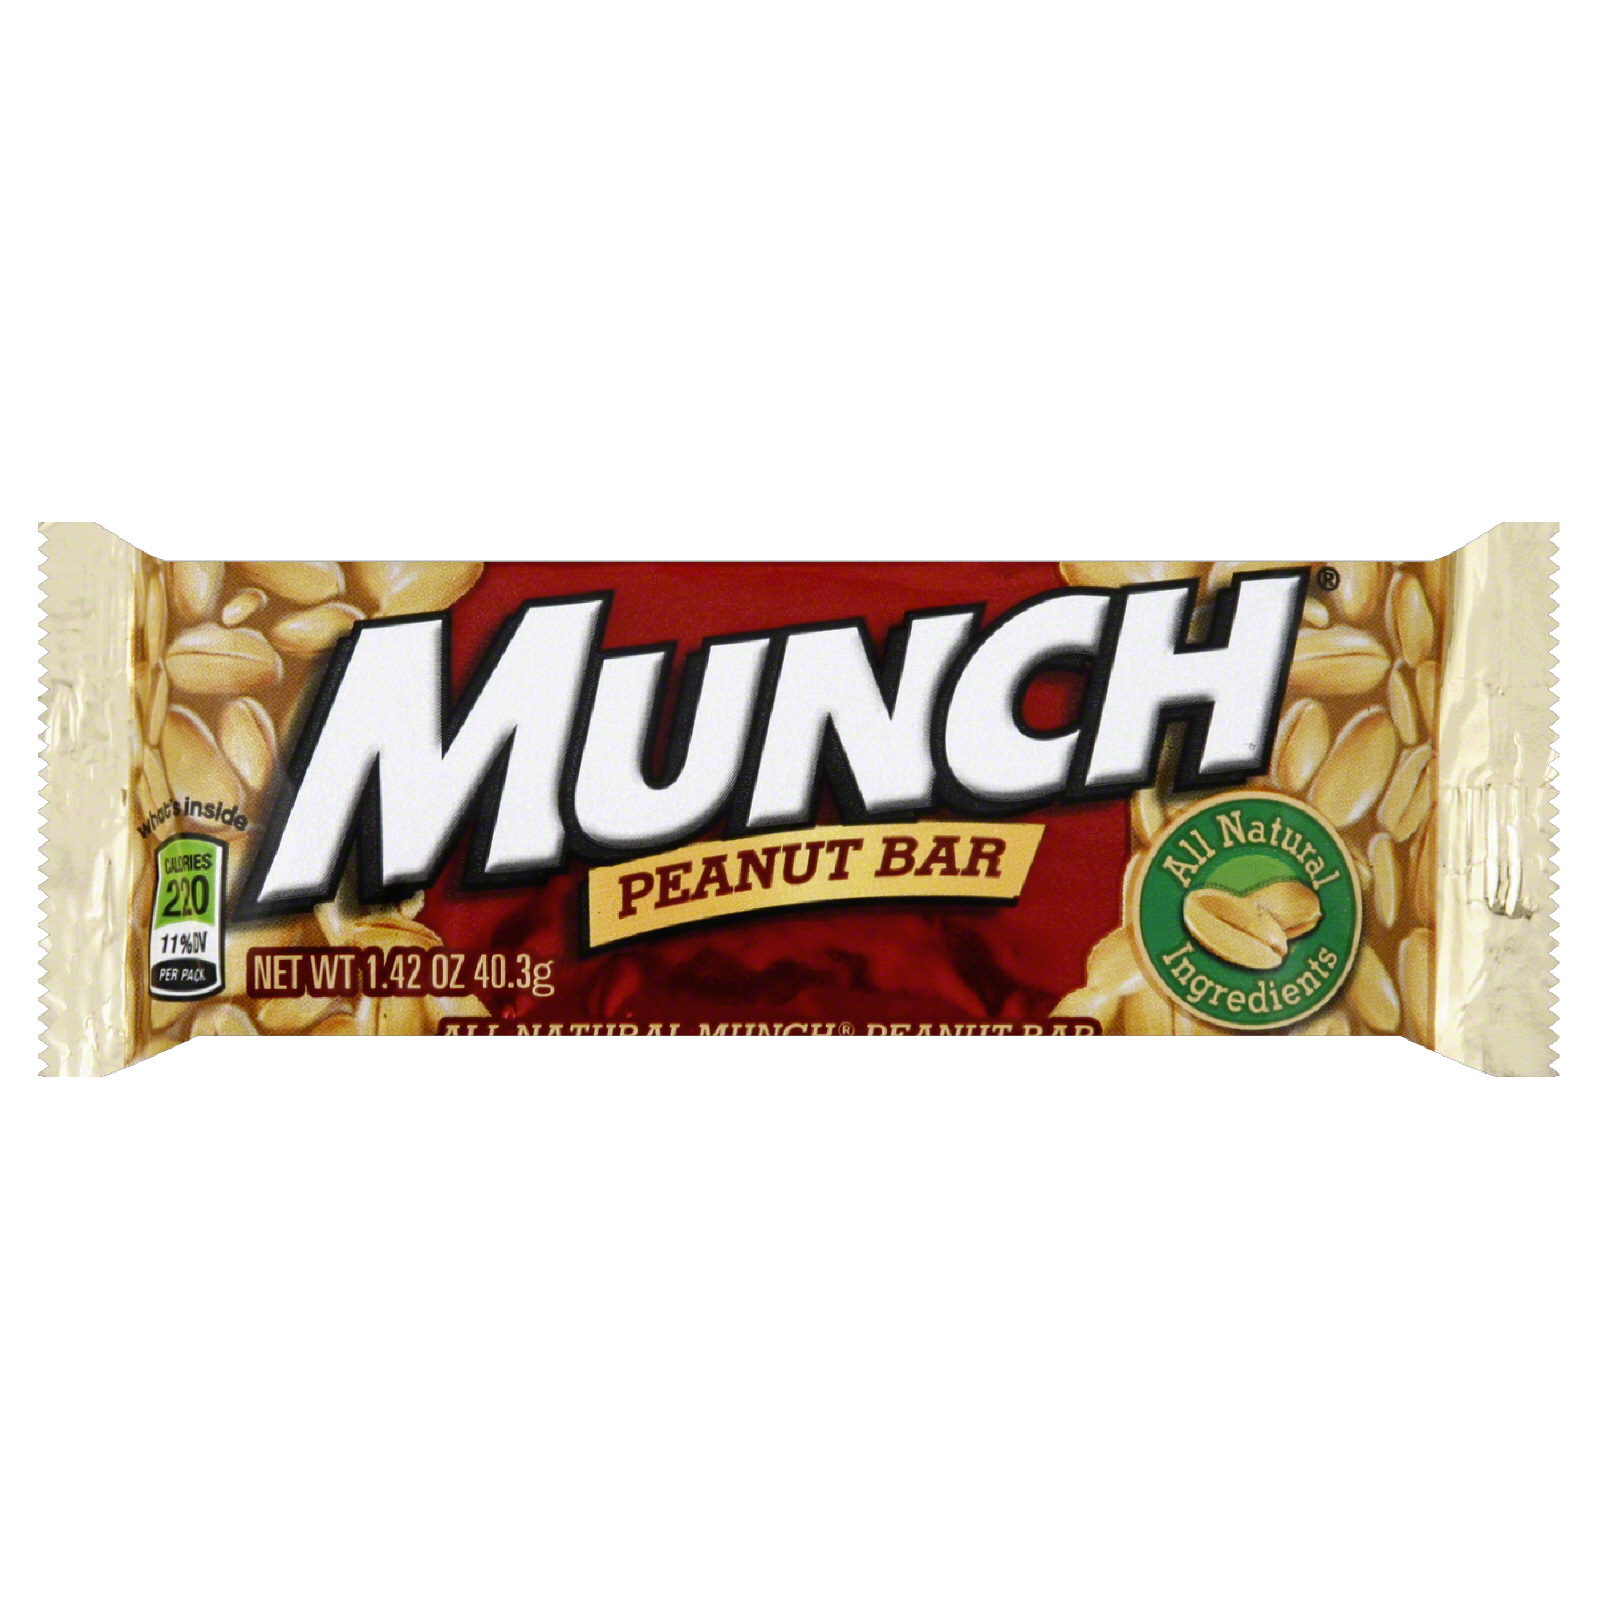 Munch Nut Bar, 1.42 oz (40.3 g)